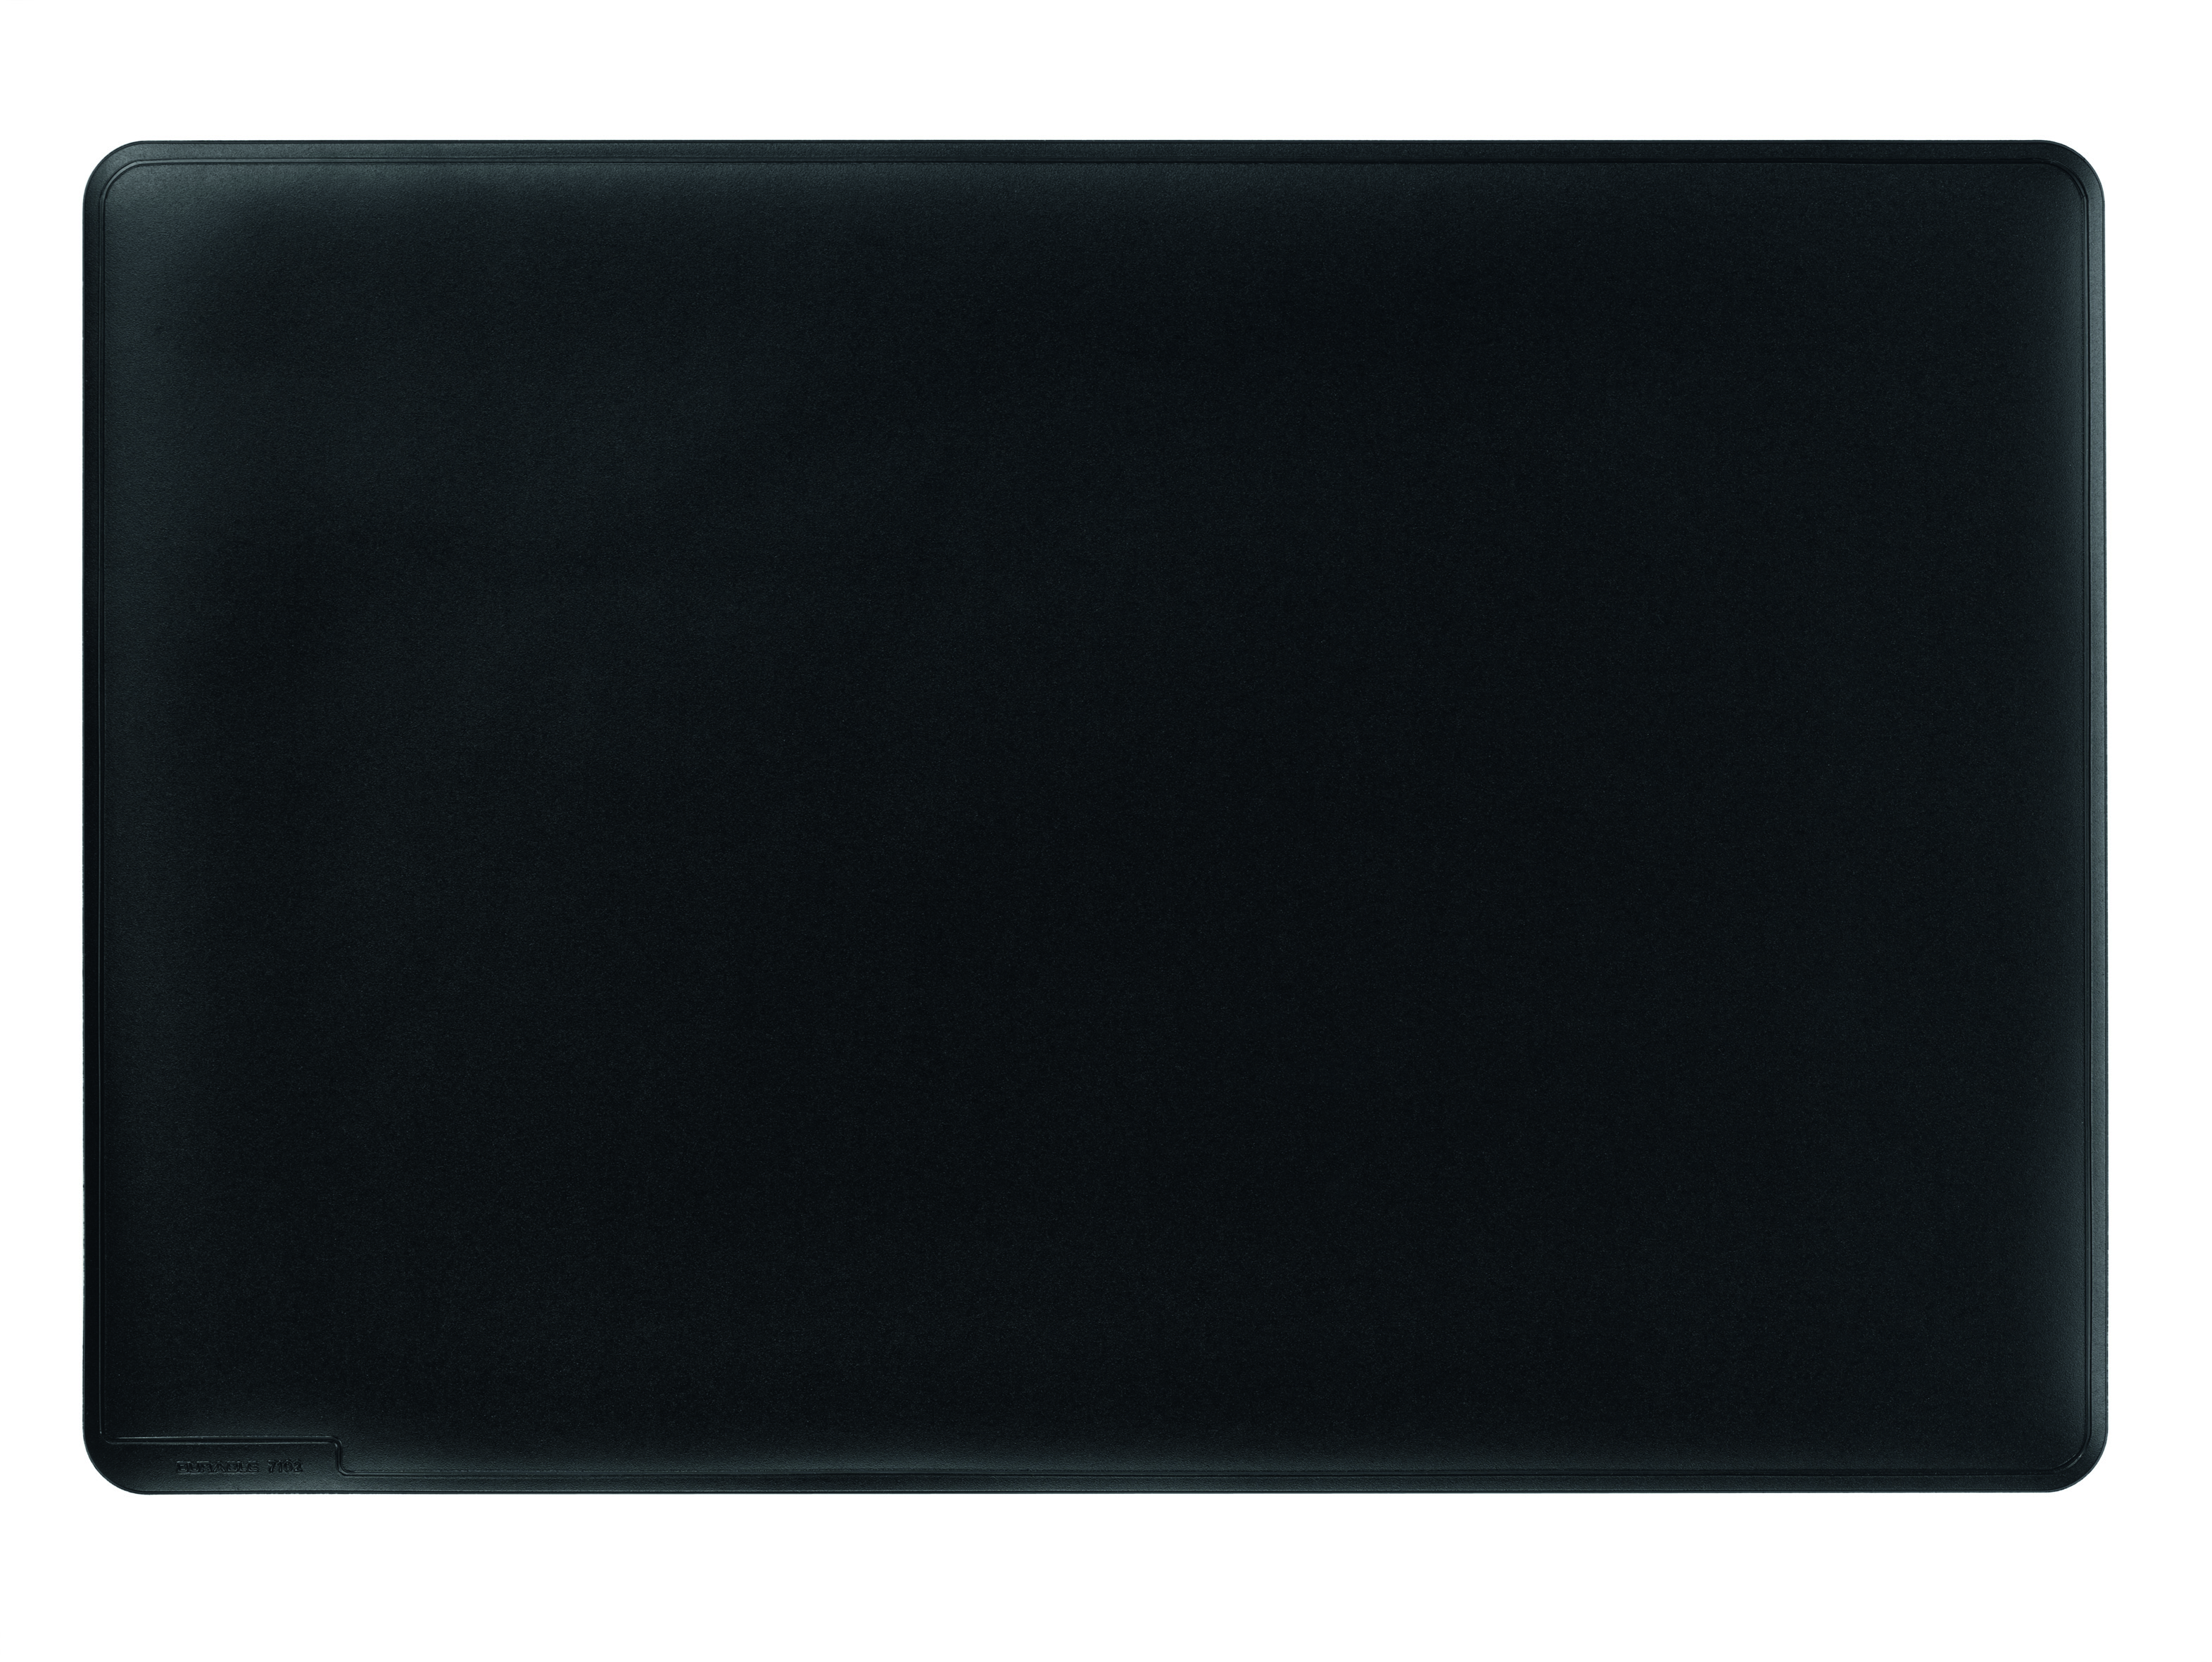 Durable Desk Mat with Contoured Edges 400x530mm Black 710201